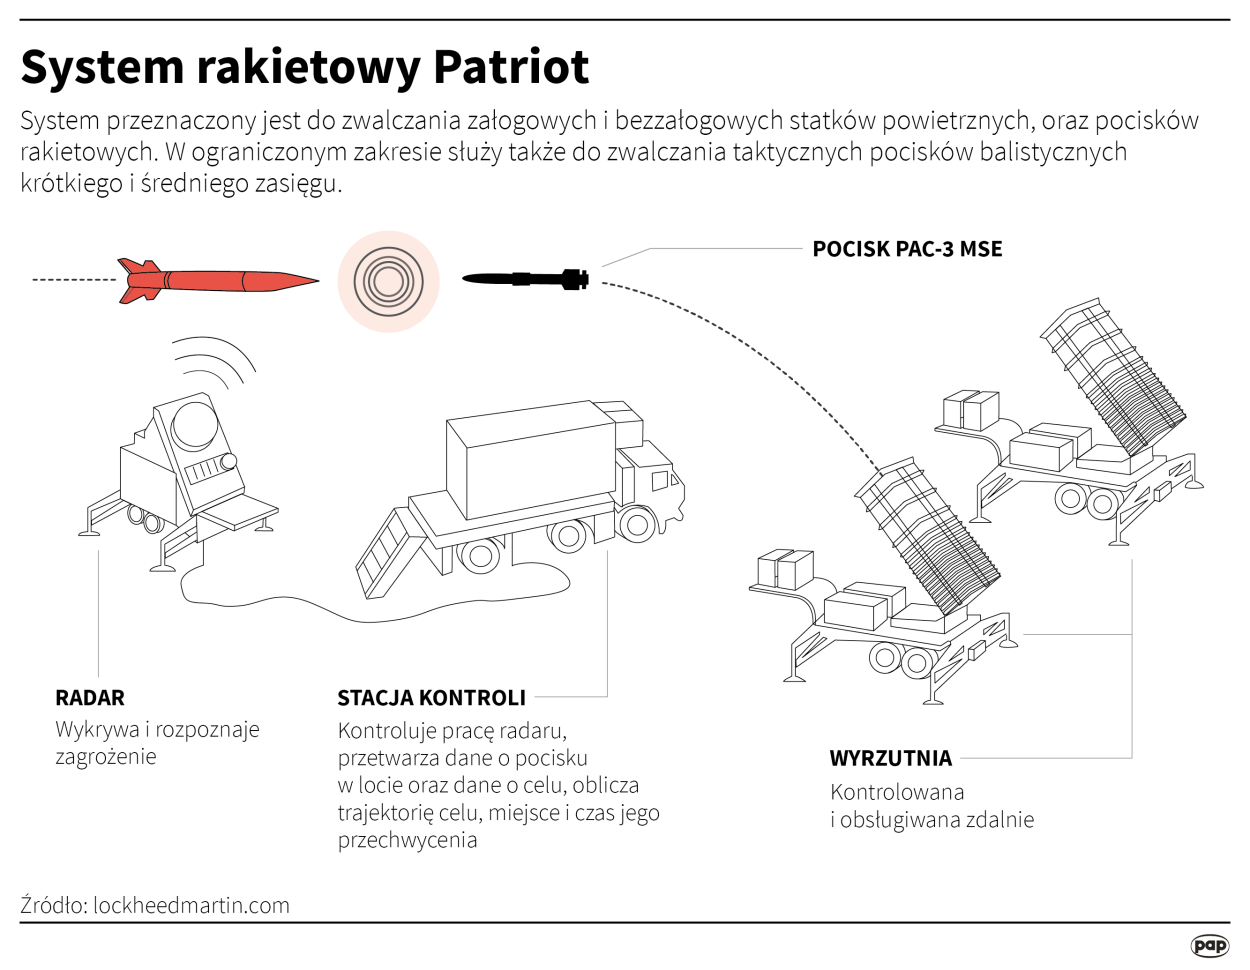 System rakietowy Patriot, autorzy: PAP/Maria Samczuk, Adam Ziemienowicz